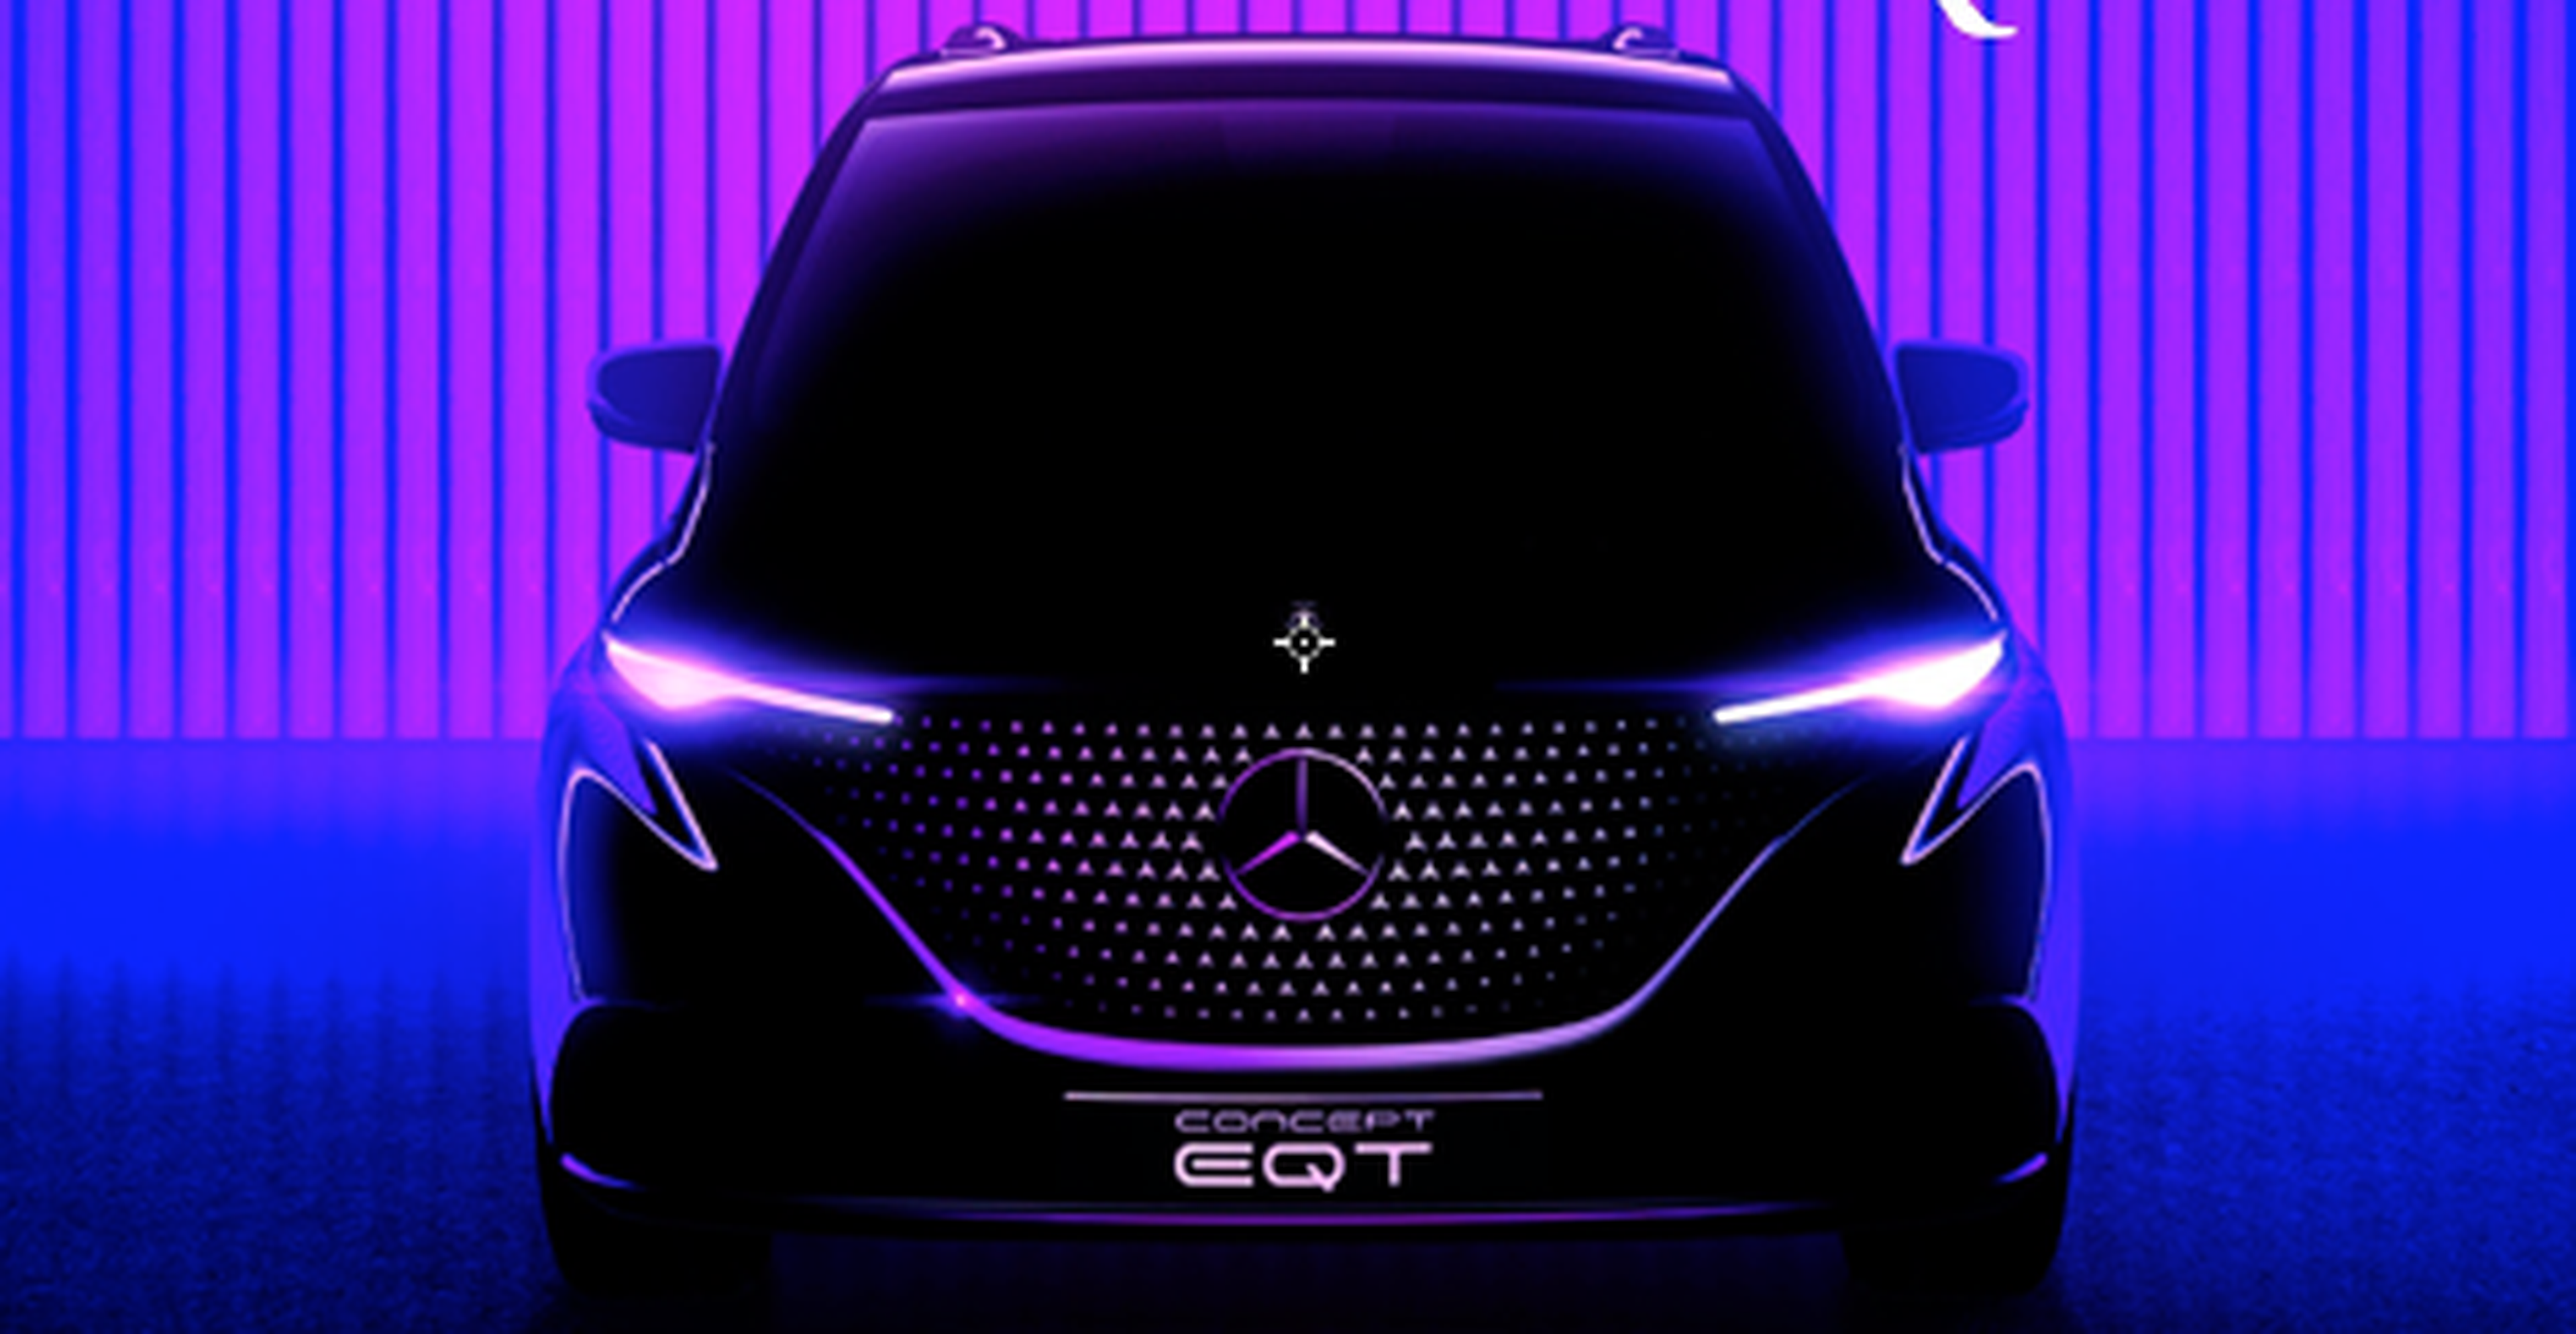 Mercedes EQT concept